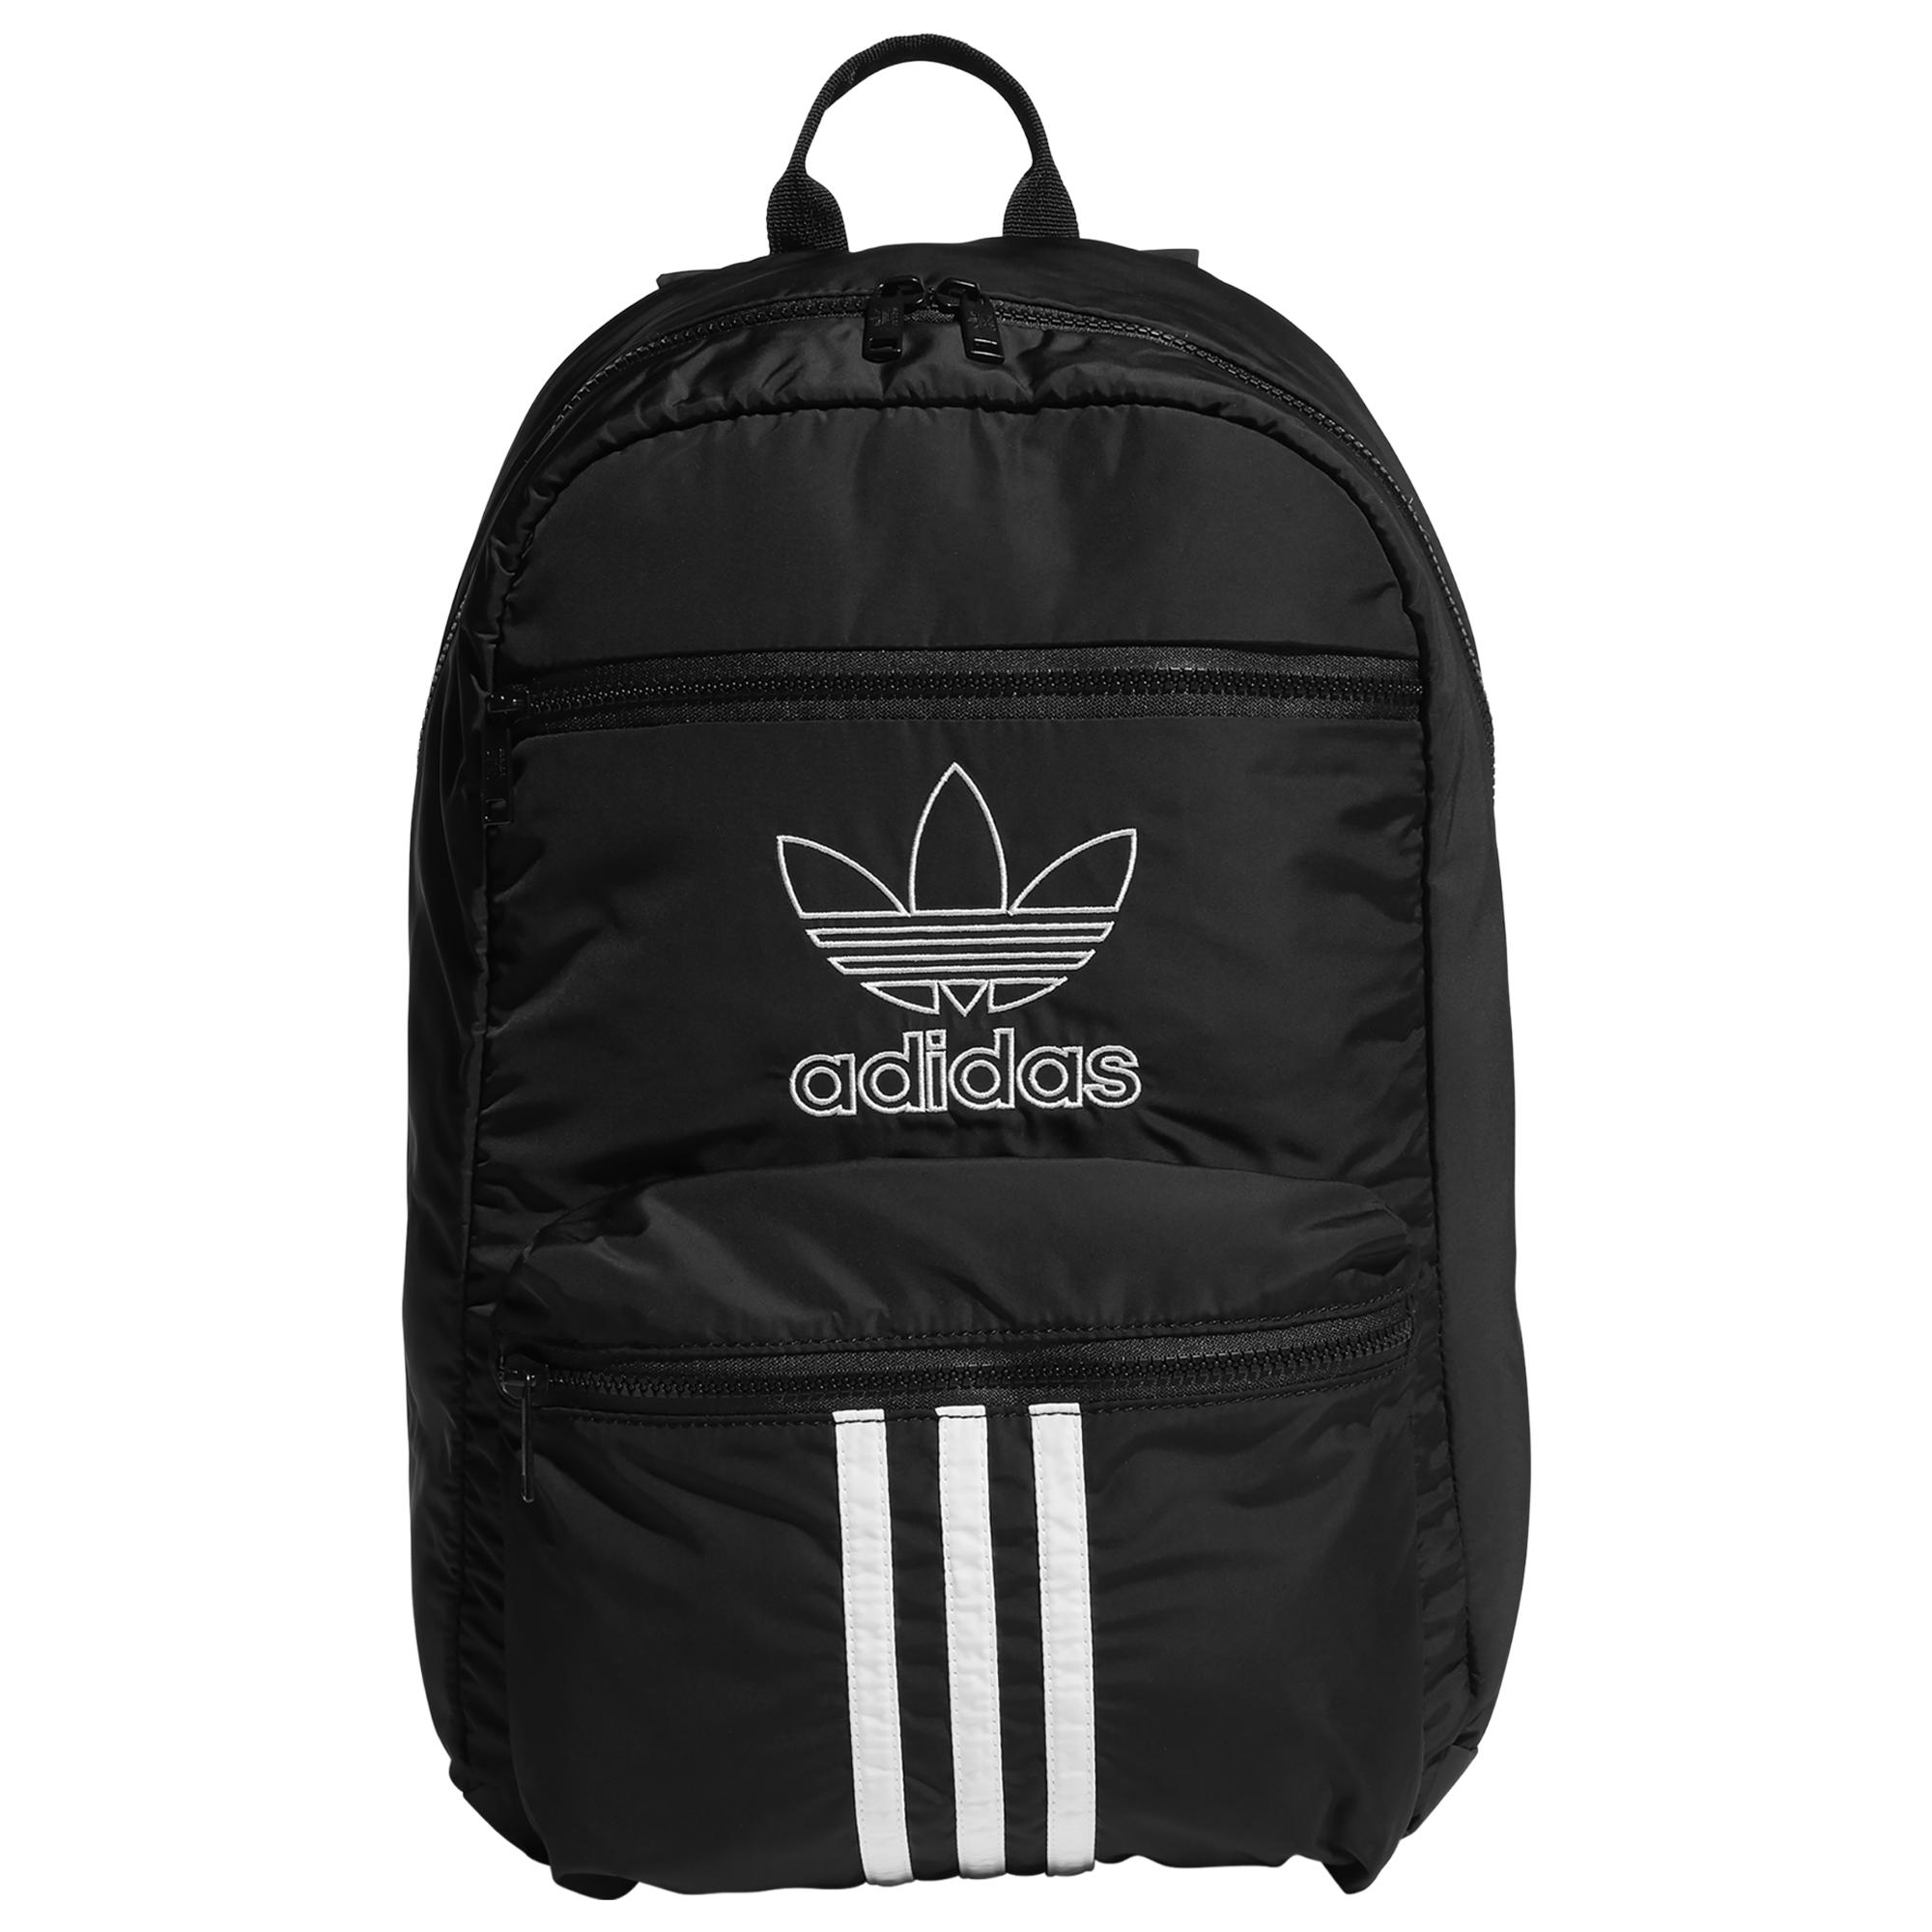 adidas Originals National 3-stripes Backpack in Black for Men - Lyst